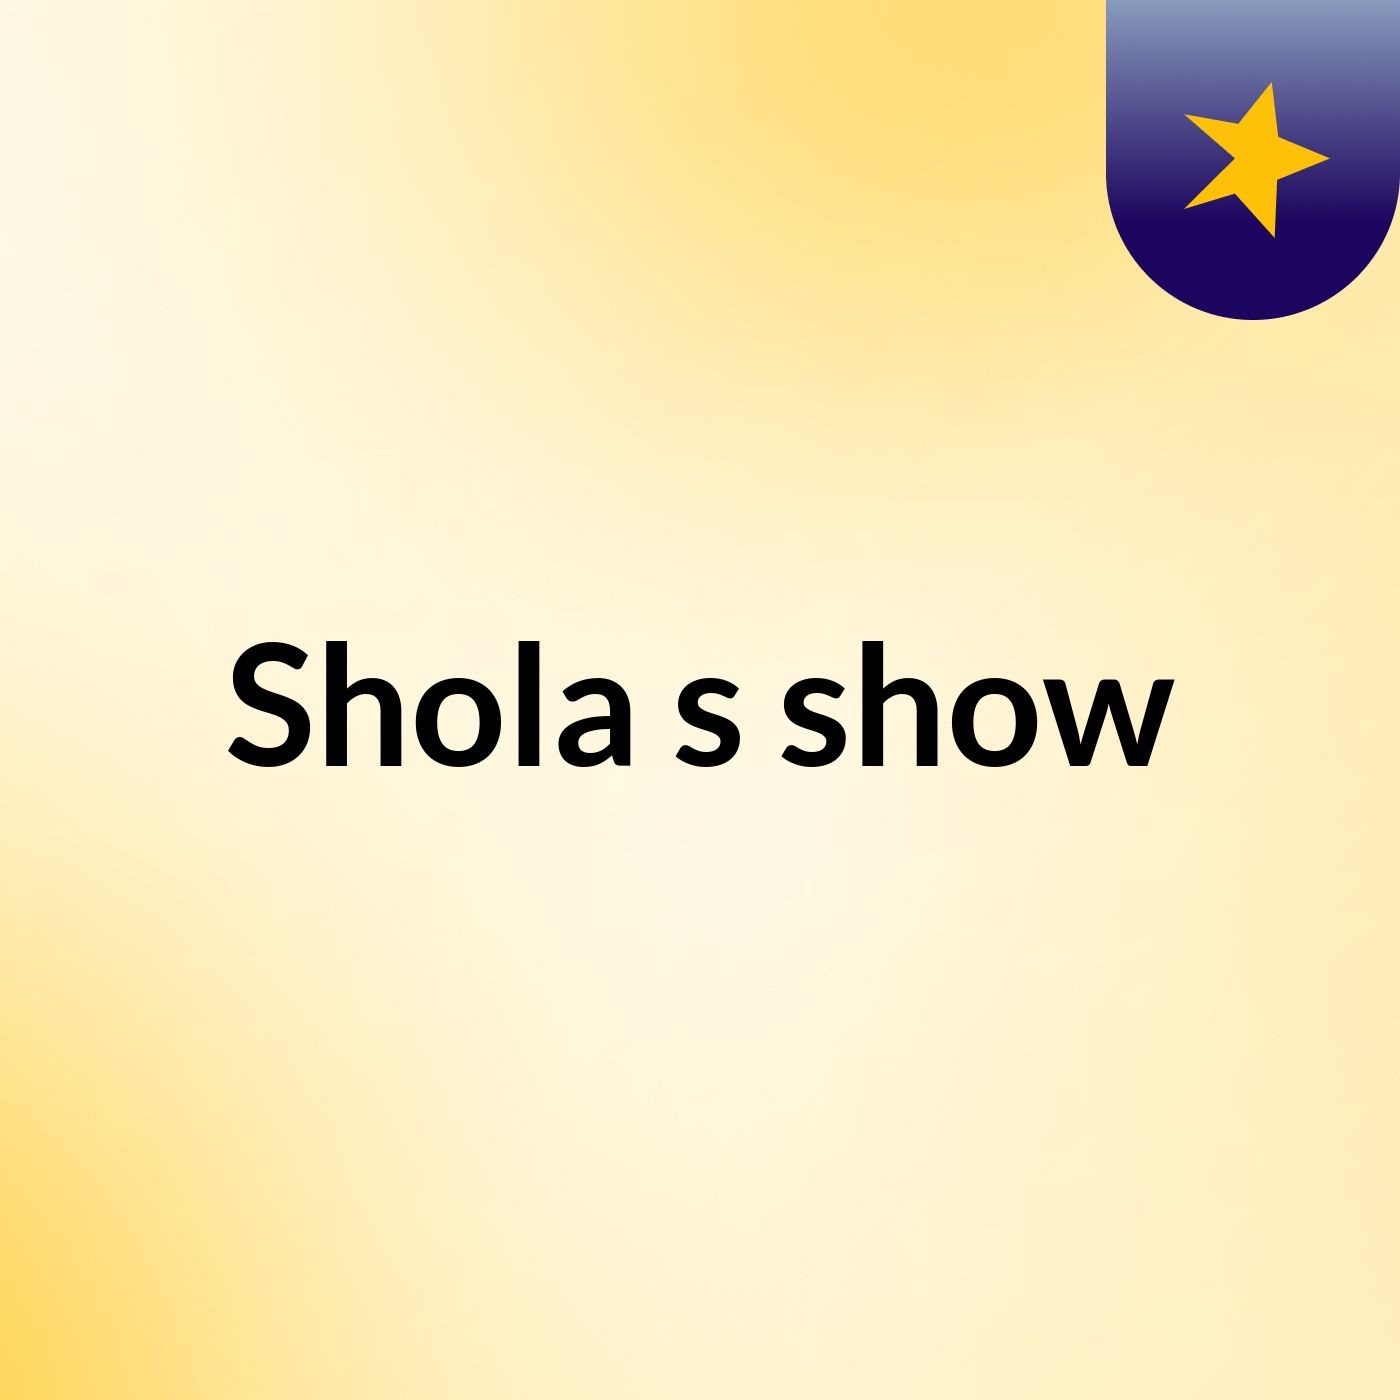 Shola's show